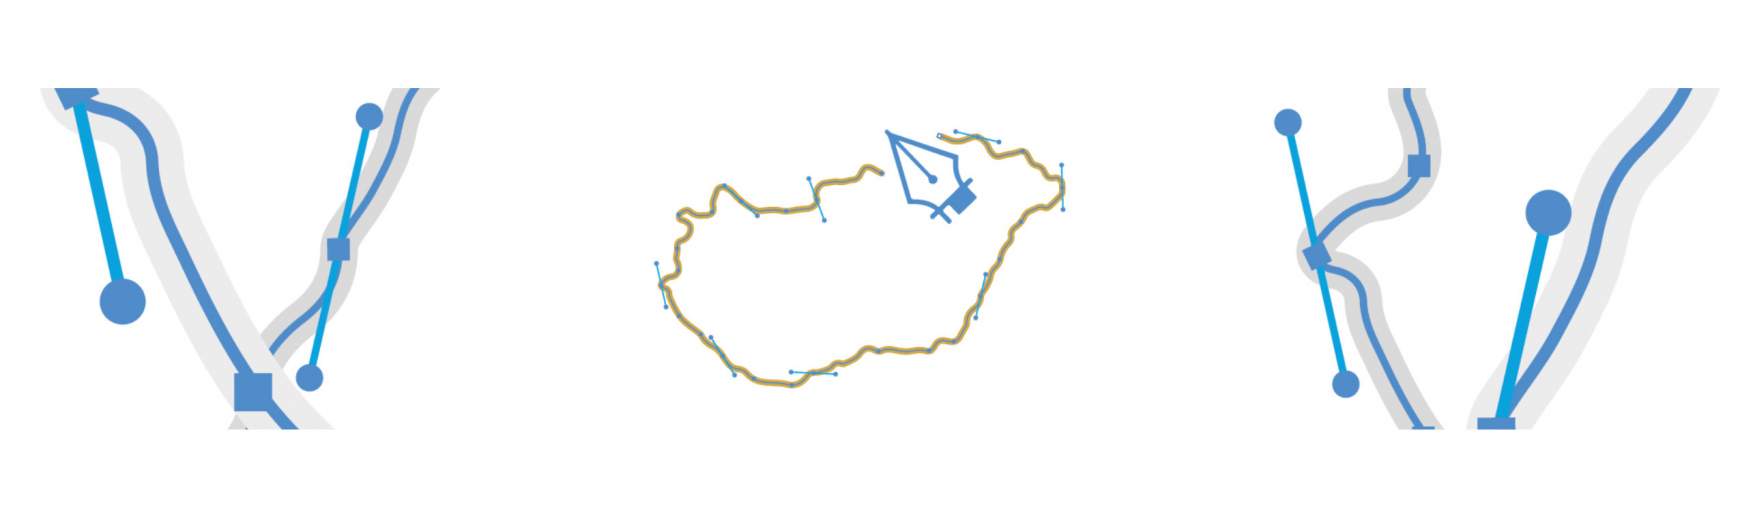 Magyarország logója - felhívás02